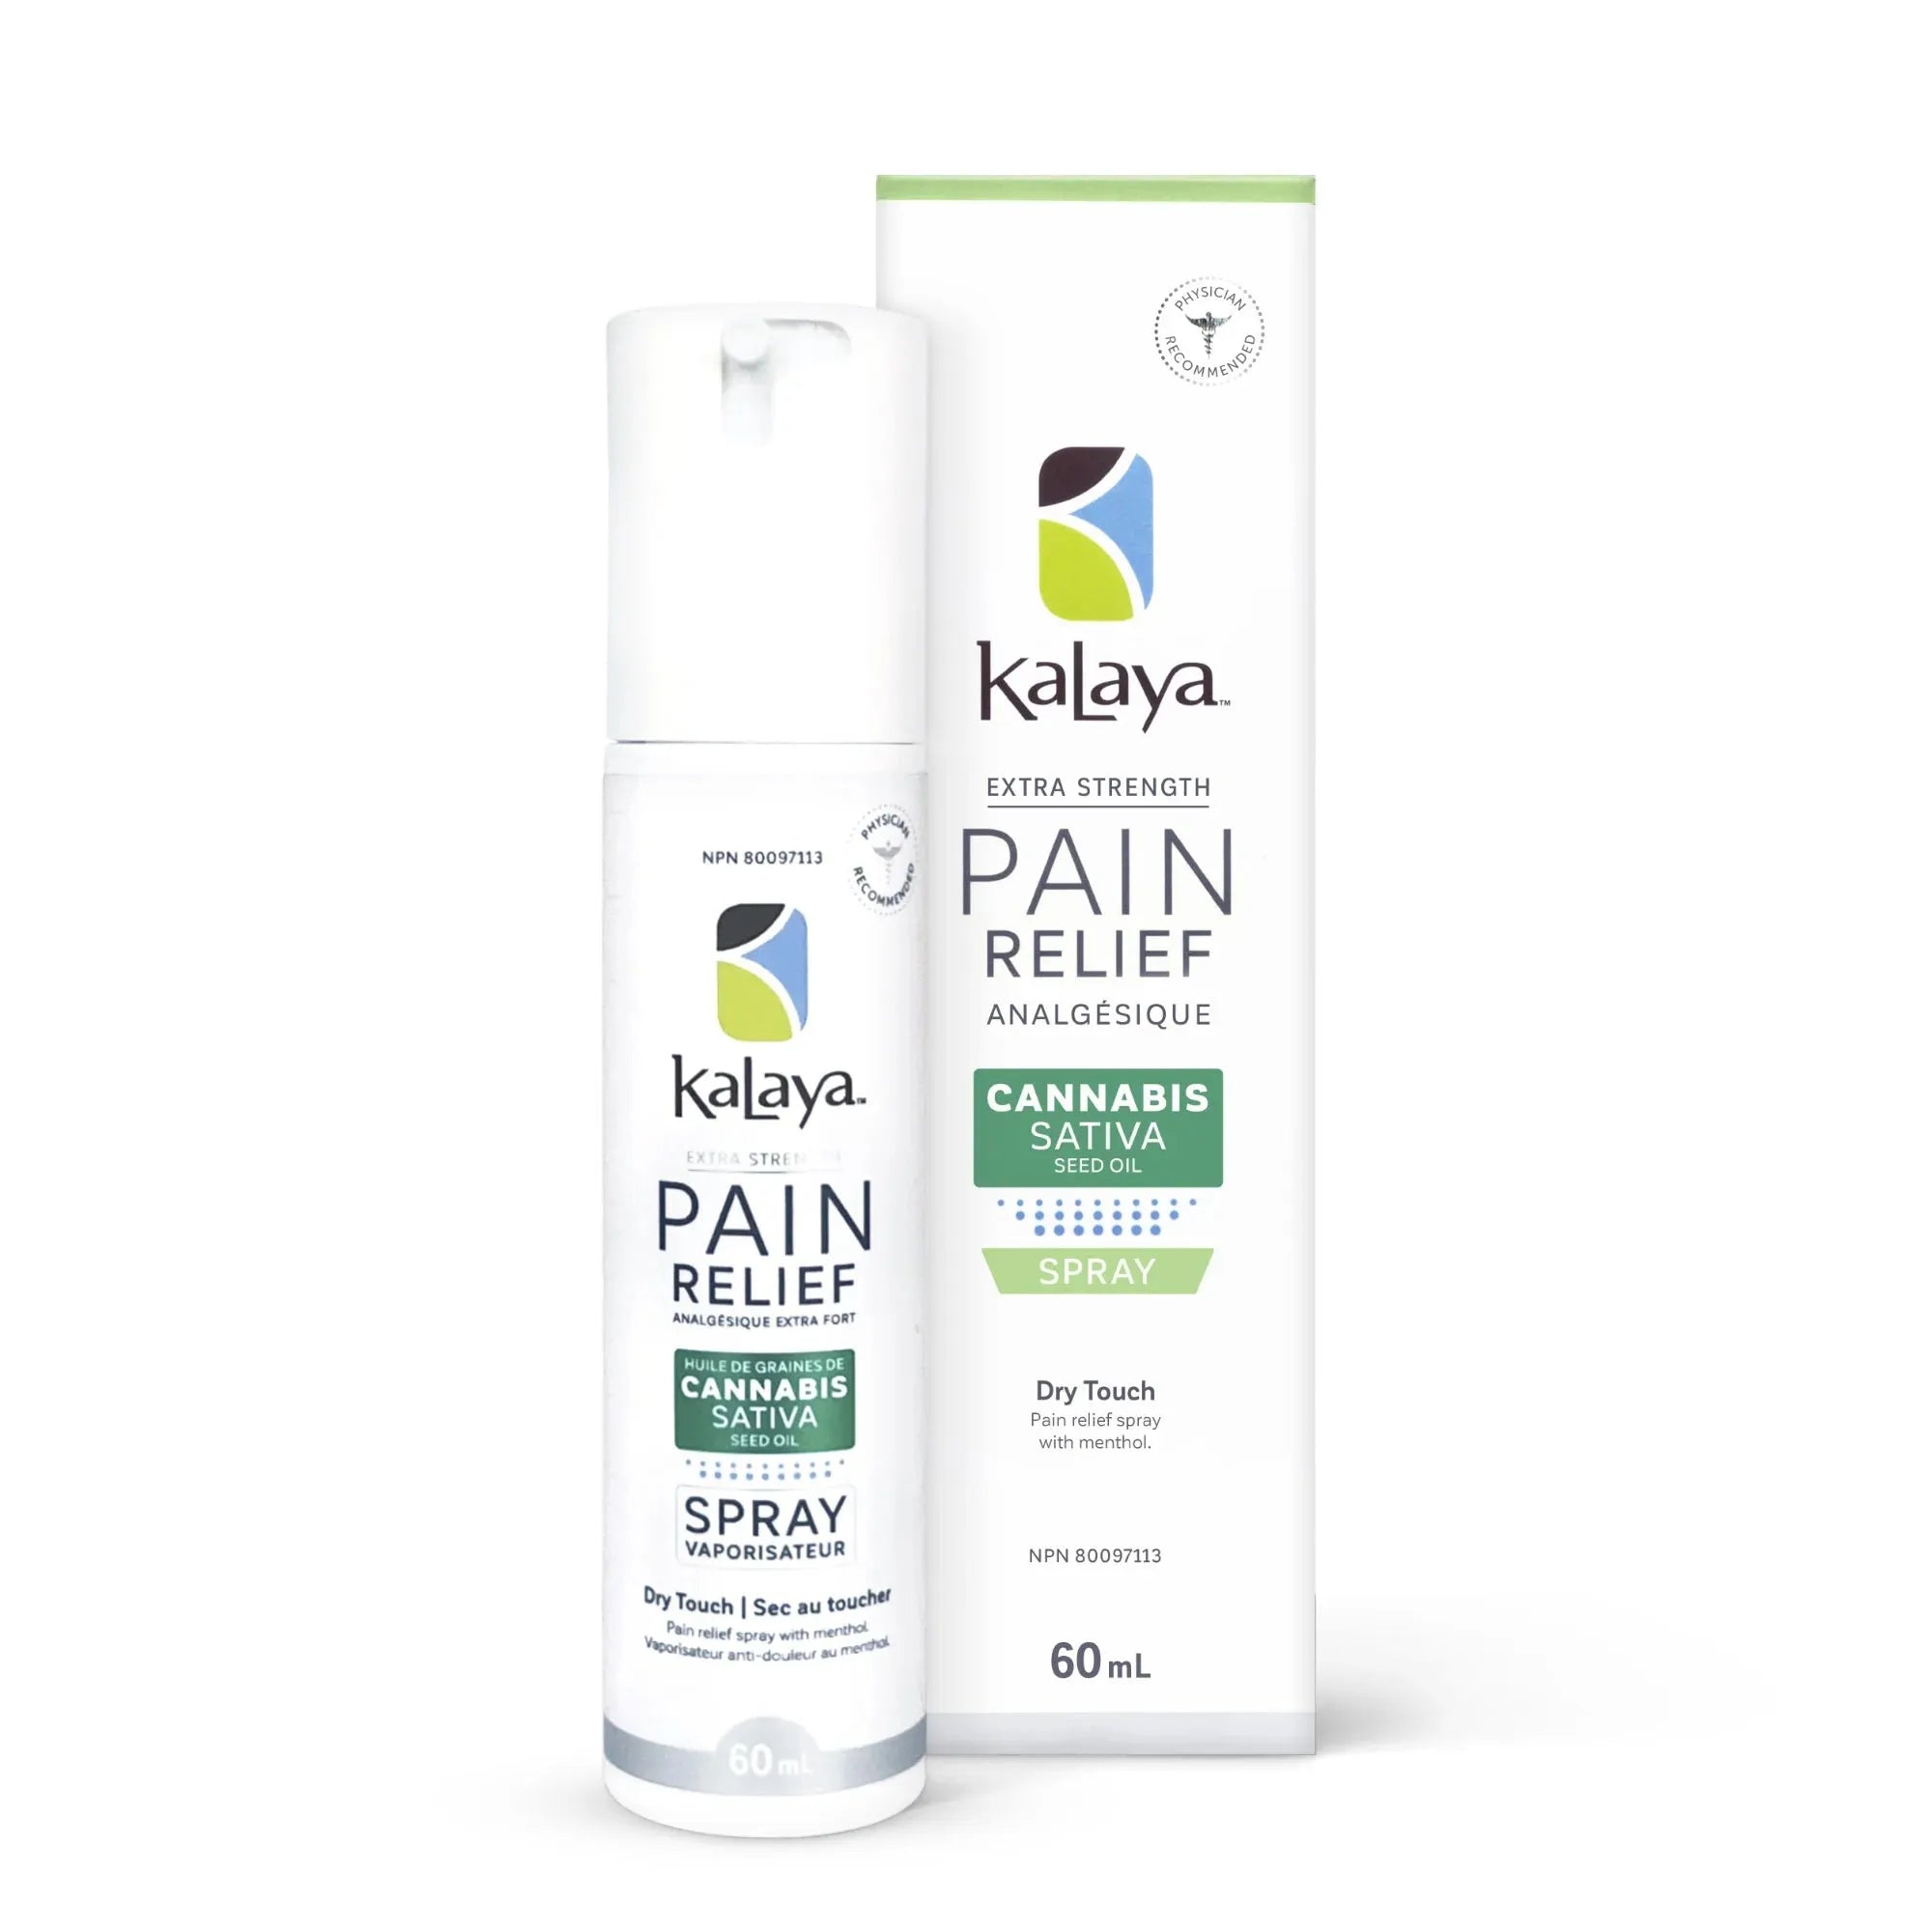 KaLaya Back Pain Relief Kit